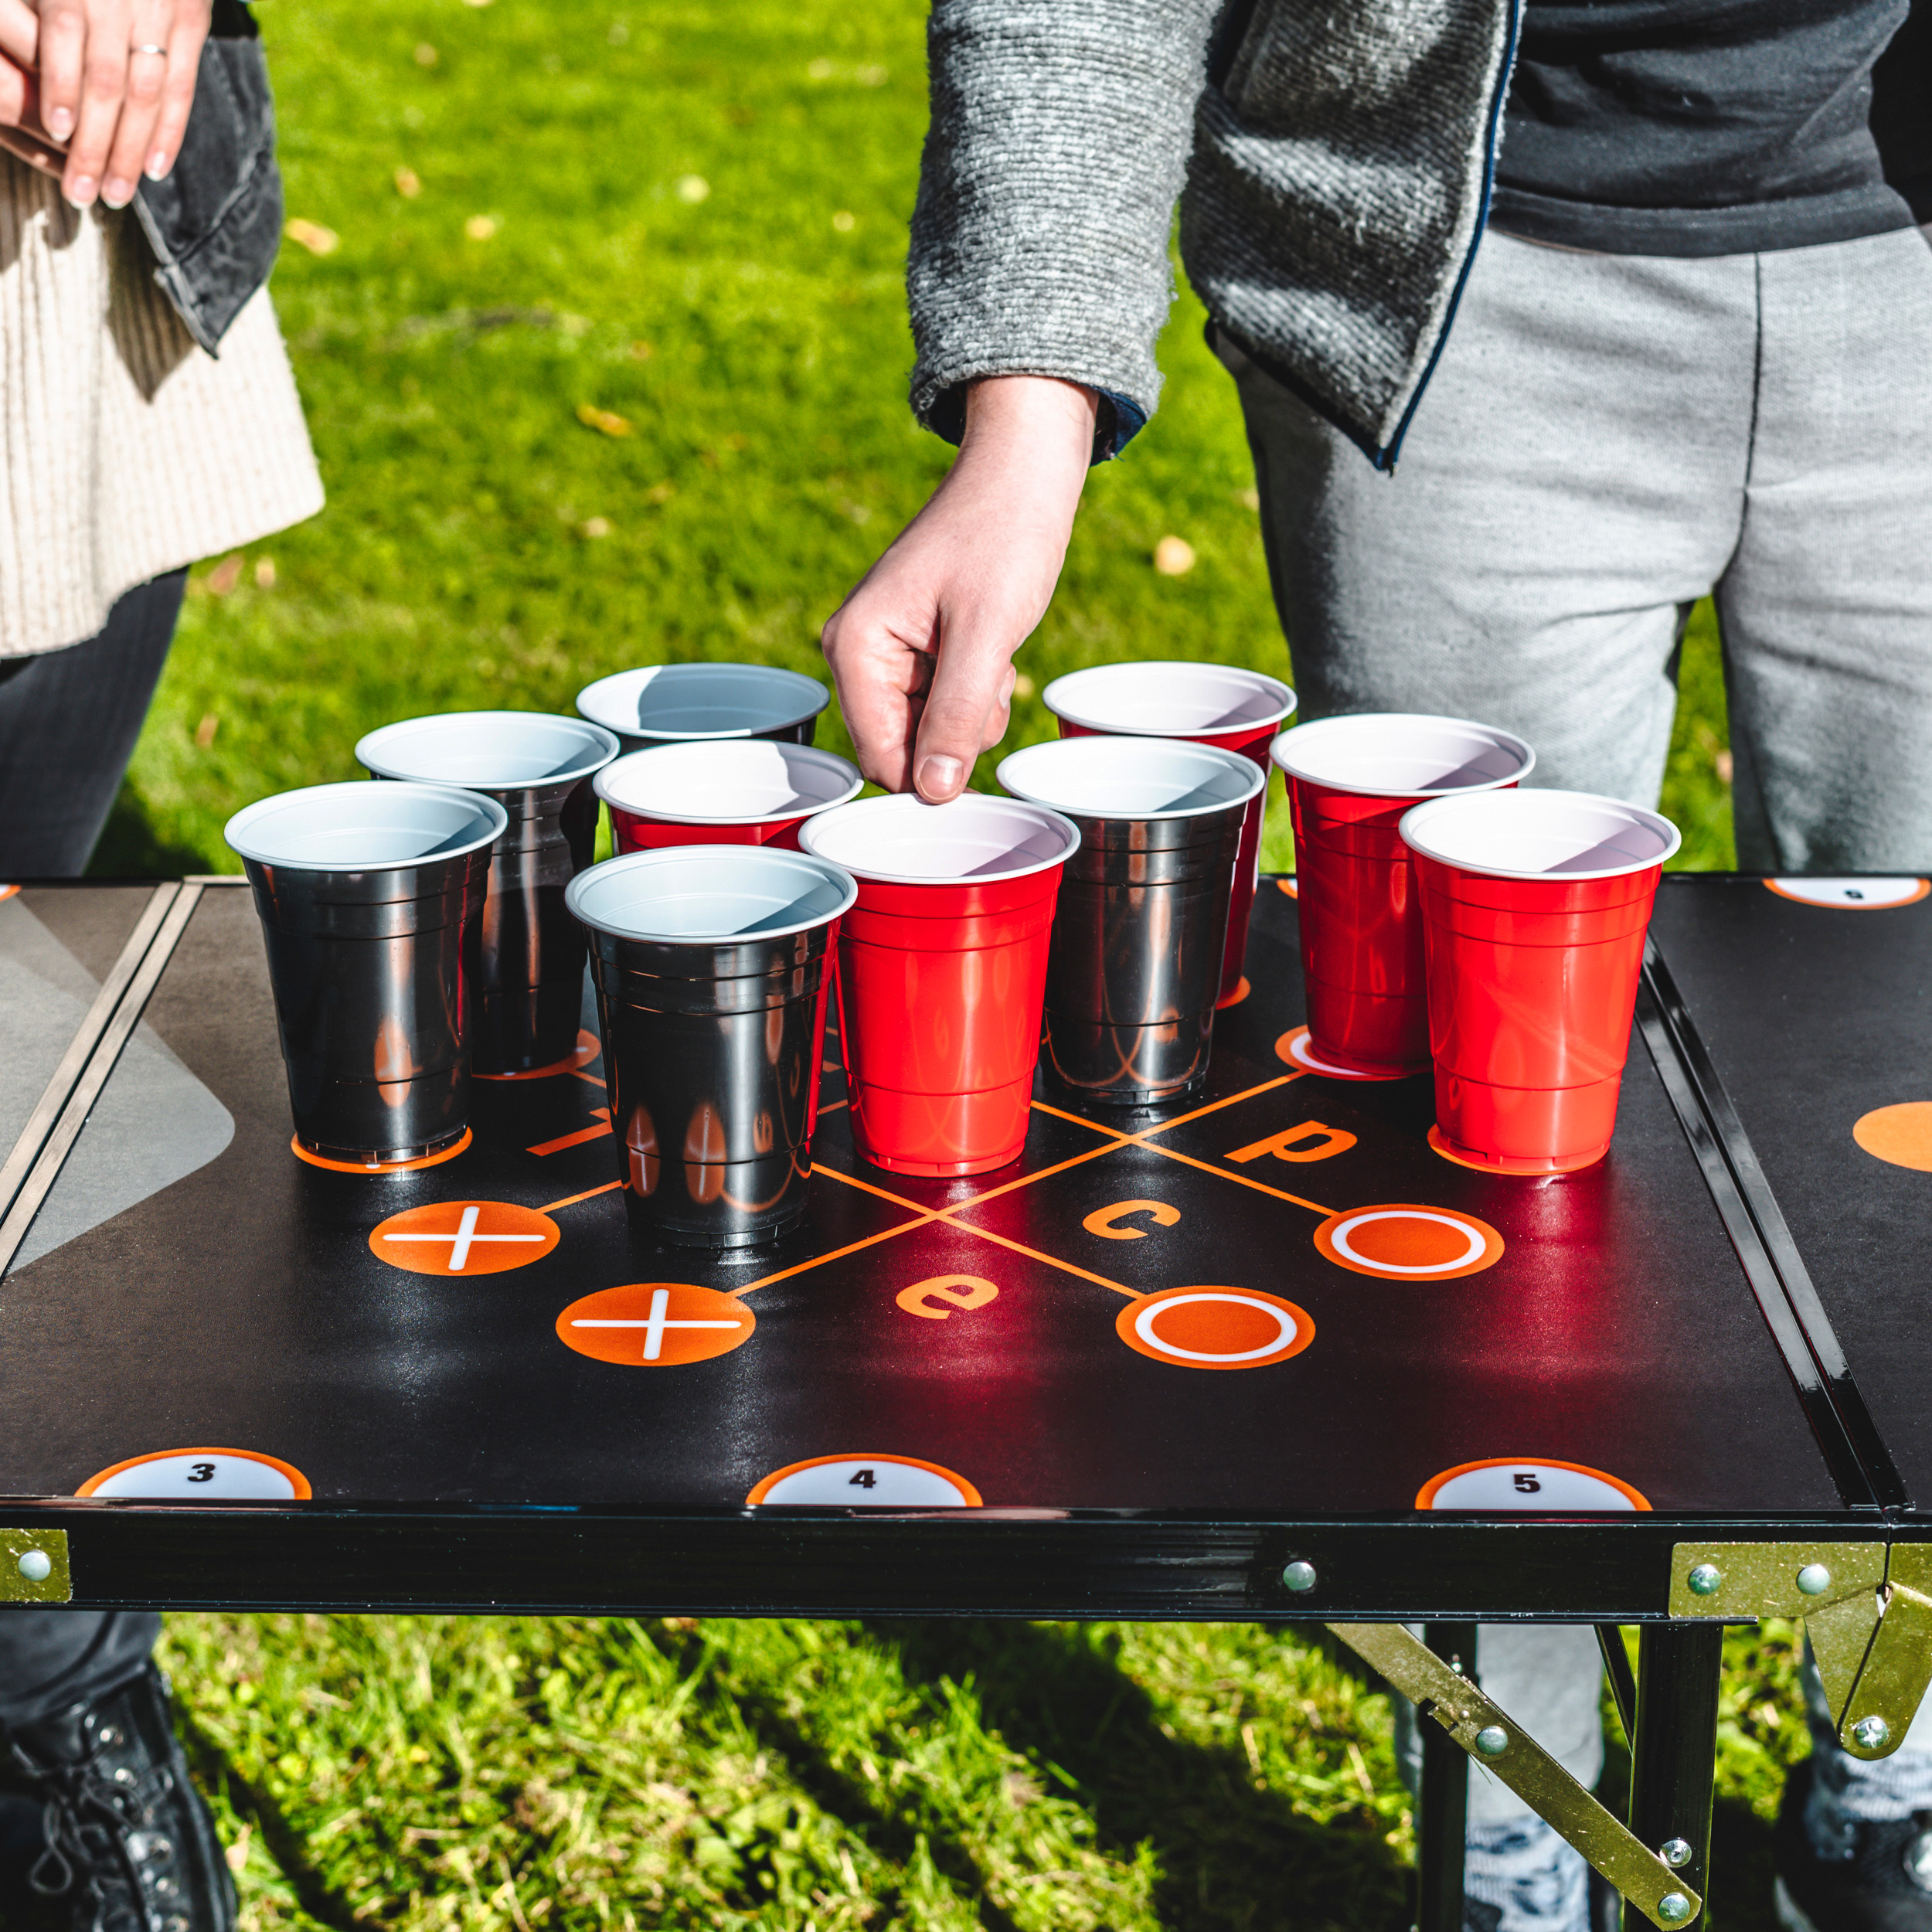 Bier-Pong Tisch inkl. 3 Spielbällen & 22 Plastikbechern (Länge